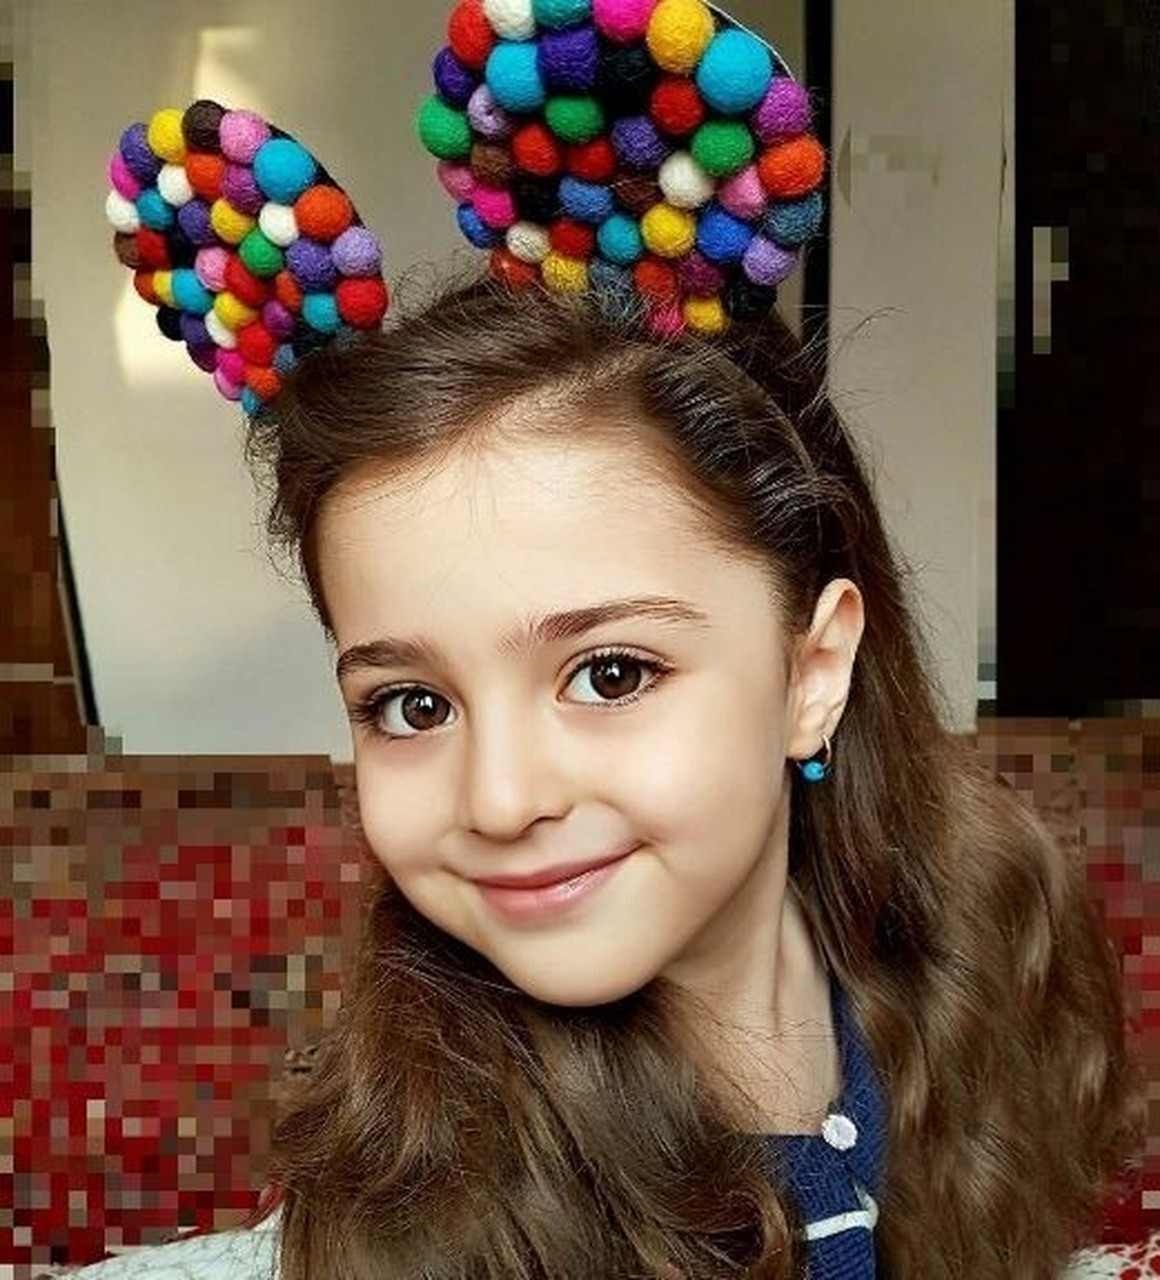 全球公认的世界上最美伊朗小女孩儿 美在大家心中的定义都不一样有人